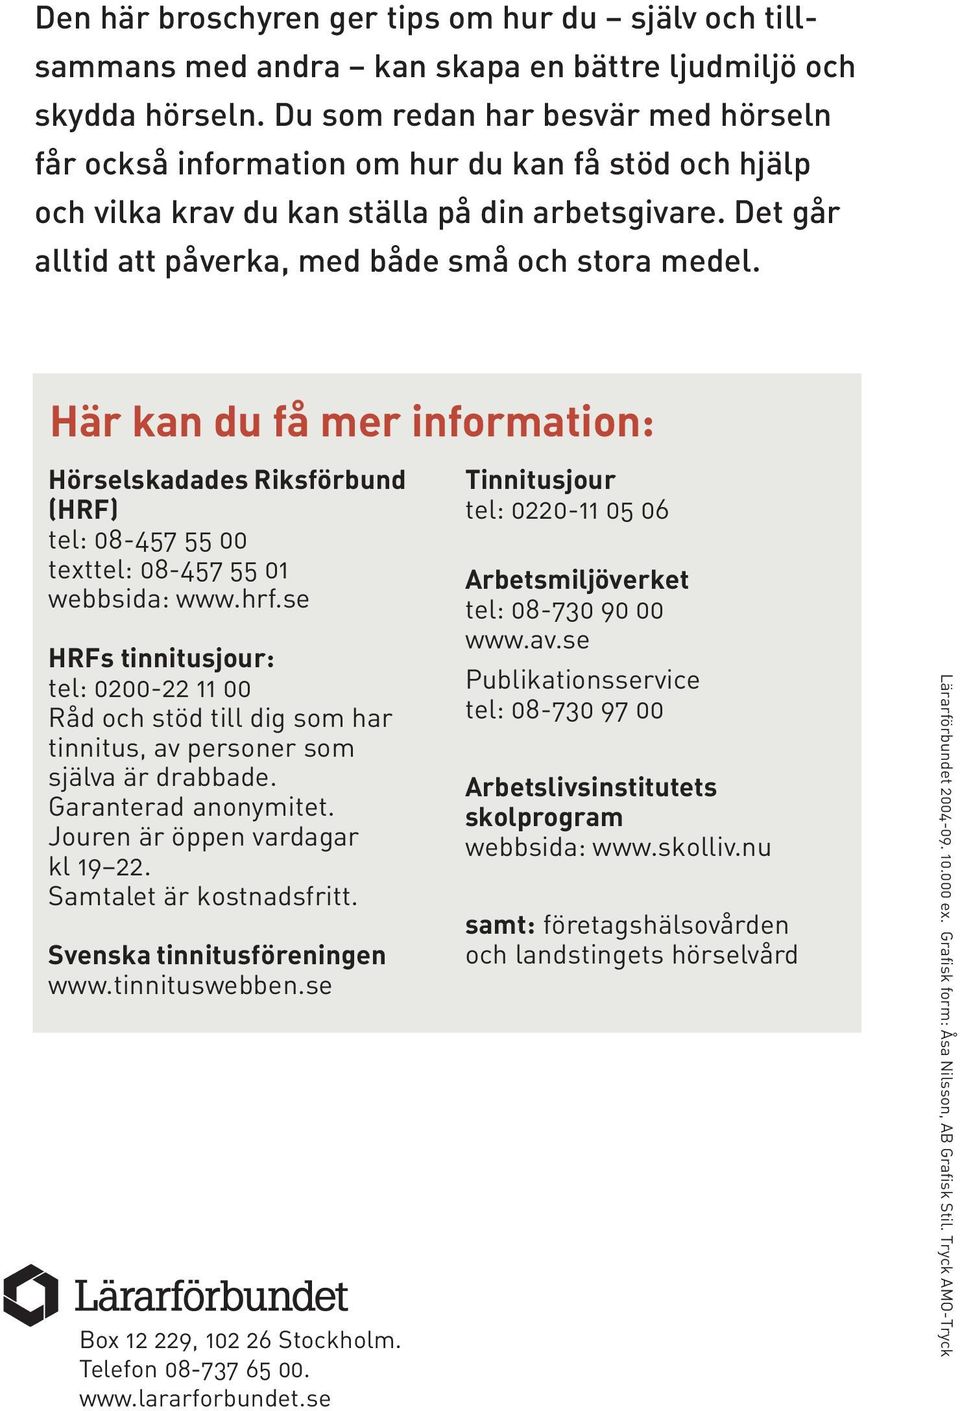 Här kan du få mer information: 16 Hörselskadades Riksförbund (HRF) tel: 08-457 55 00 texttel: 08-457 55 01 webbsida: www.hrf.